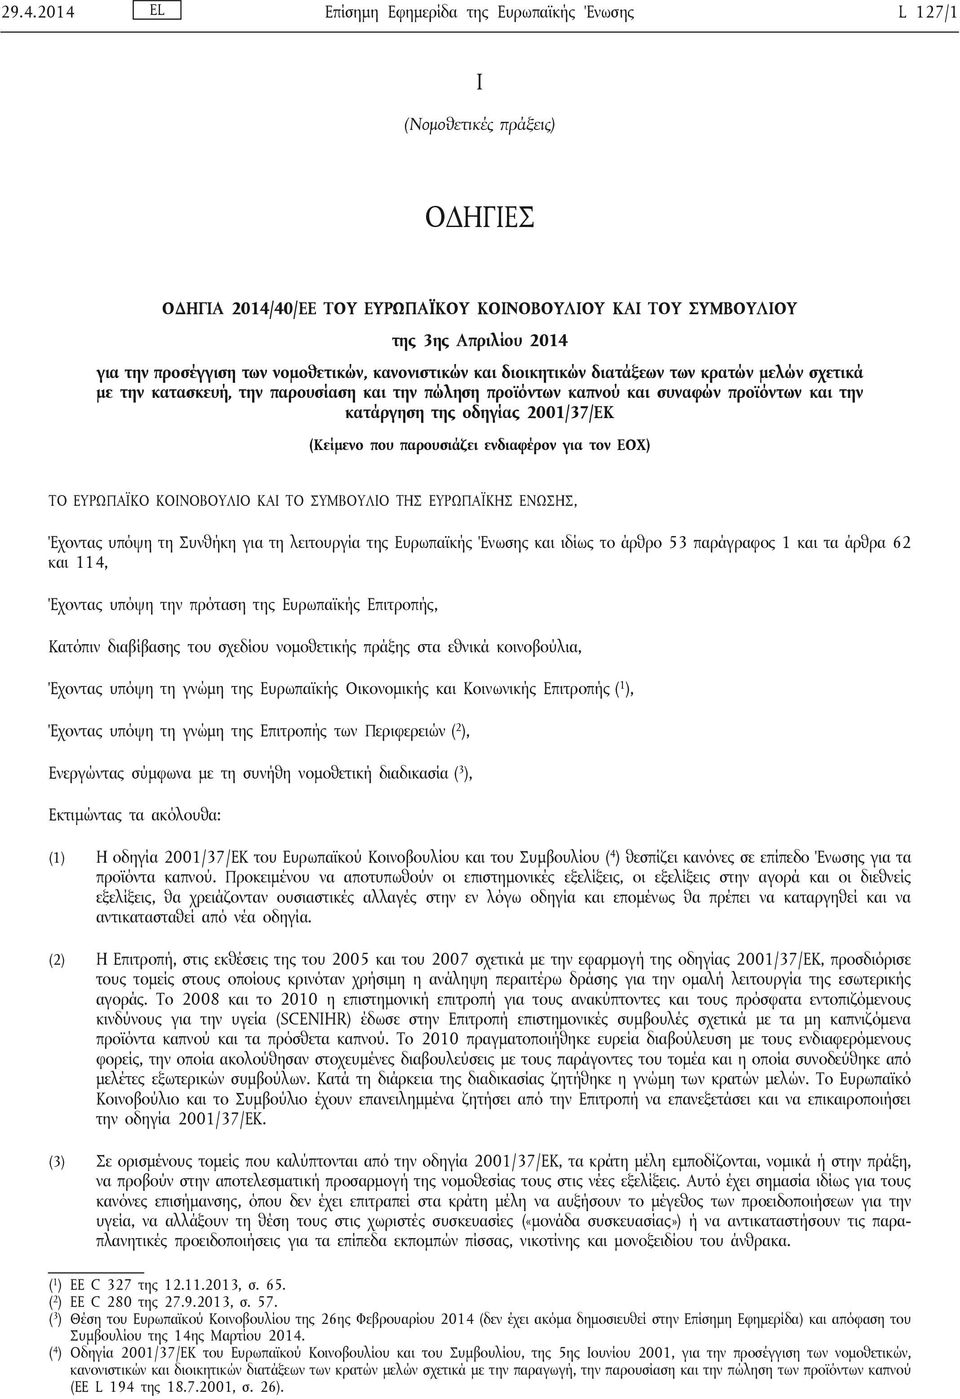 2001/37/ΕΚ (Κείμενο που παρουσιάζει ενδιαφέρον για τον ΕΟΧ) ΤΟ ΕΥΡΩΠΑΪΚΟ ΚΟΙΝΟΒΟΥΛΙΟ ΚΑΙ ΤΟ ΣΥΜΒΟΥΛΙΟ ΤΗΣ ΕΥΡΩΠΑΪΚΗΣ ΕΝΩΣΗΣ, Έχοντας υπόψη τη Συνθήκη για τη λειτουργία της Ευρωπαϊκής Ένωσης και ιδίως